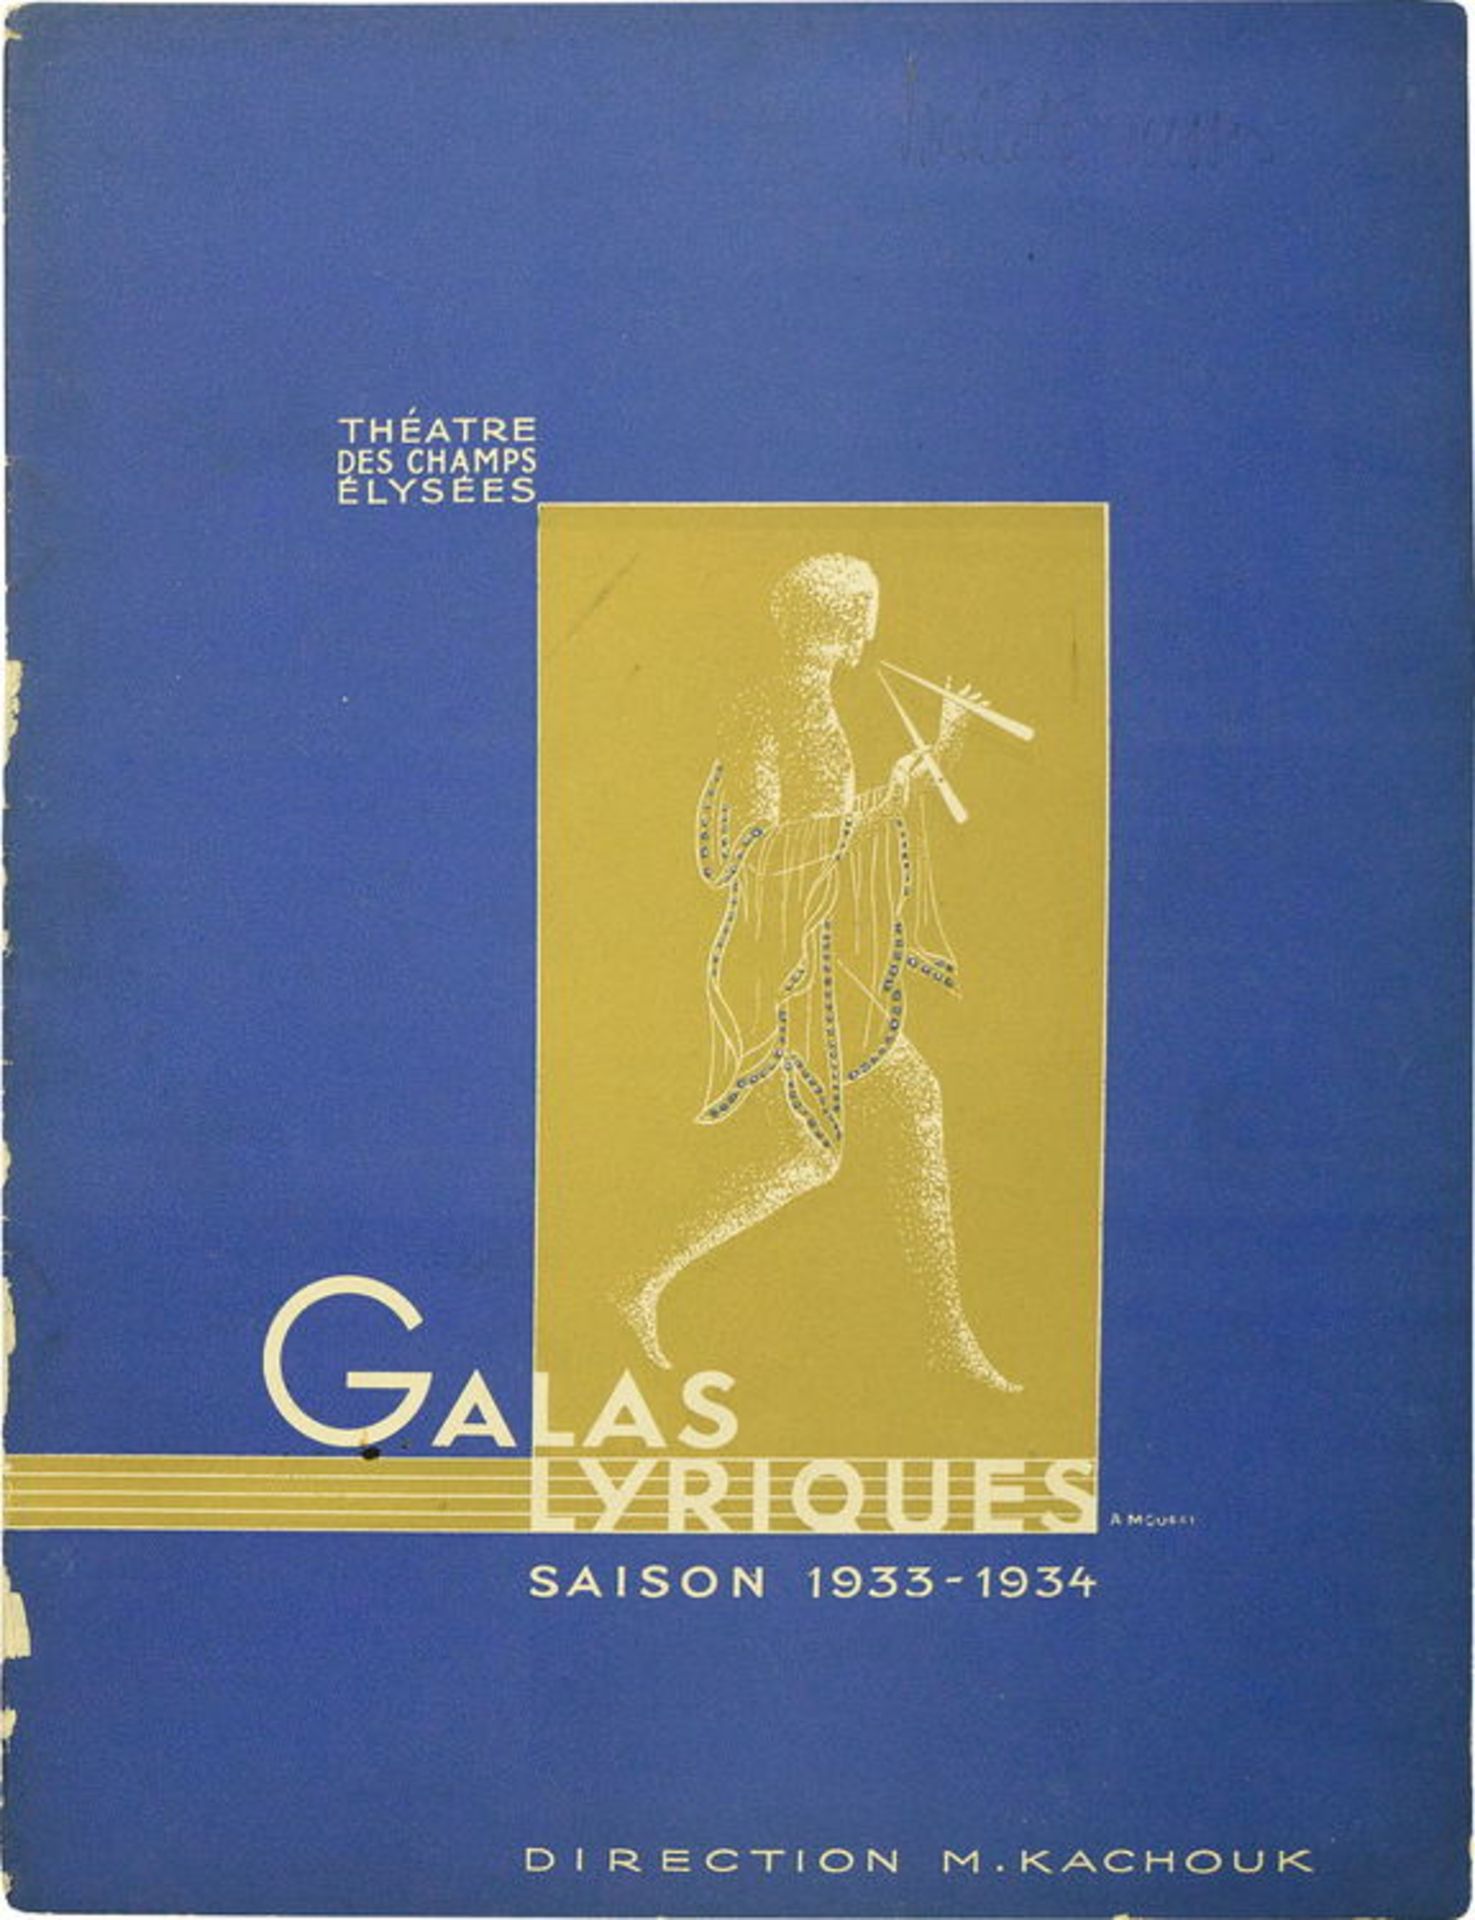 [BALLETS RUSSES] Galas Lyriques im Théatre des Champs-Élysées, Saison 1933-1934, Paris. Mit Fedor